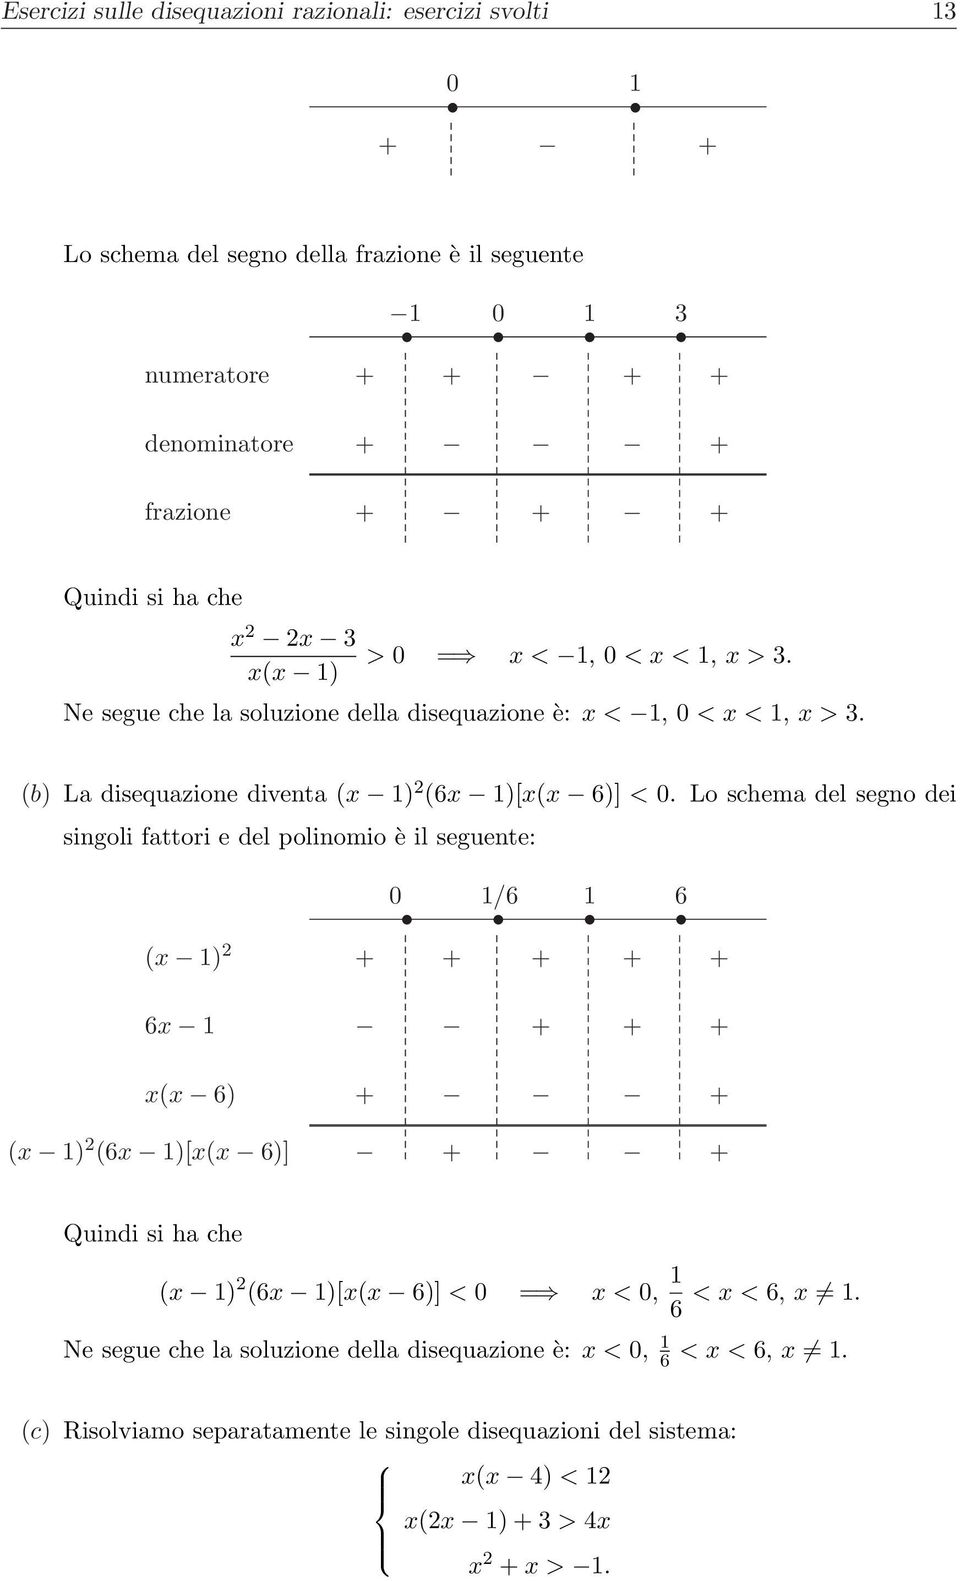 Lo schema del segno dei singoli fattori e del polinomio è il seguente: (x ) 0 /6 6 + + + + + 6x + + + x(x 6) + + (x ) (6x )[x(x 6)] + + Quindi si ha che (x ) (6x )[x(x 6)] < 0